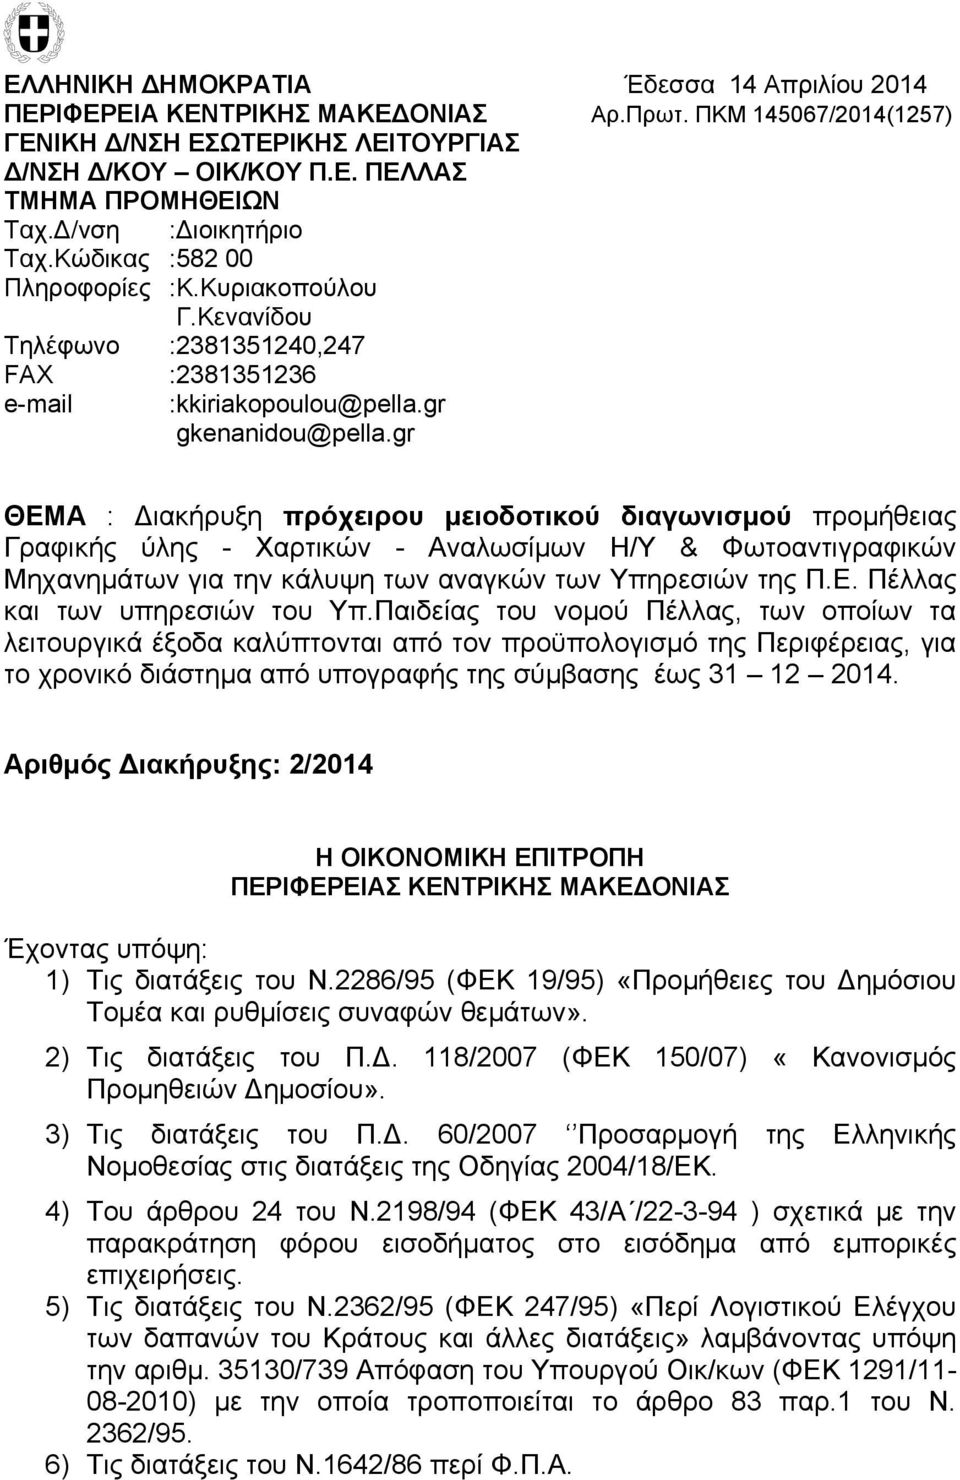 gr ΘΕΜΑ : Διακήρυξη πρόχειρου μειοδοτικού διαγωνισμού προμήθειας Γραφικής ύλης - Χαρτικών - Αναλωσίμων Η/Υ & Φωτοαντιγραφικών Μηχανημάτων για την κάλυψη των αναγκών των Υπηρεσιών της Π.Ε. Πέλλας και των υπηρεσιών του Υπ.